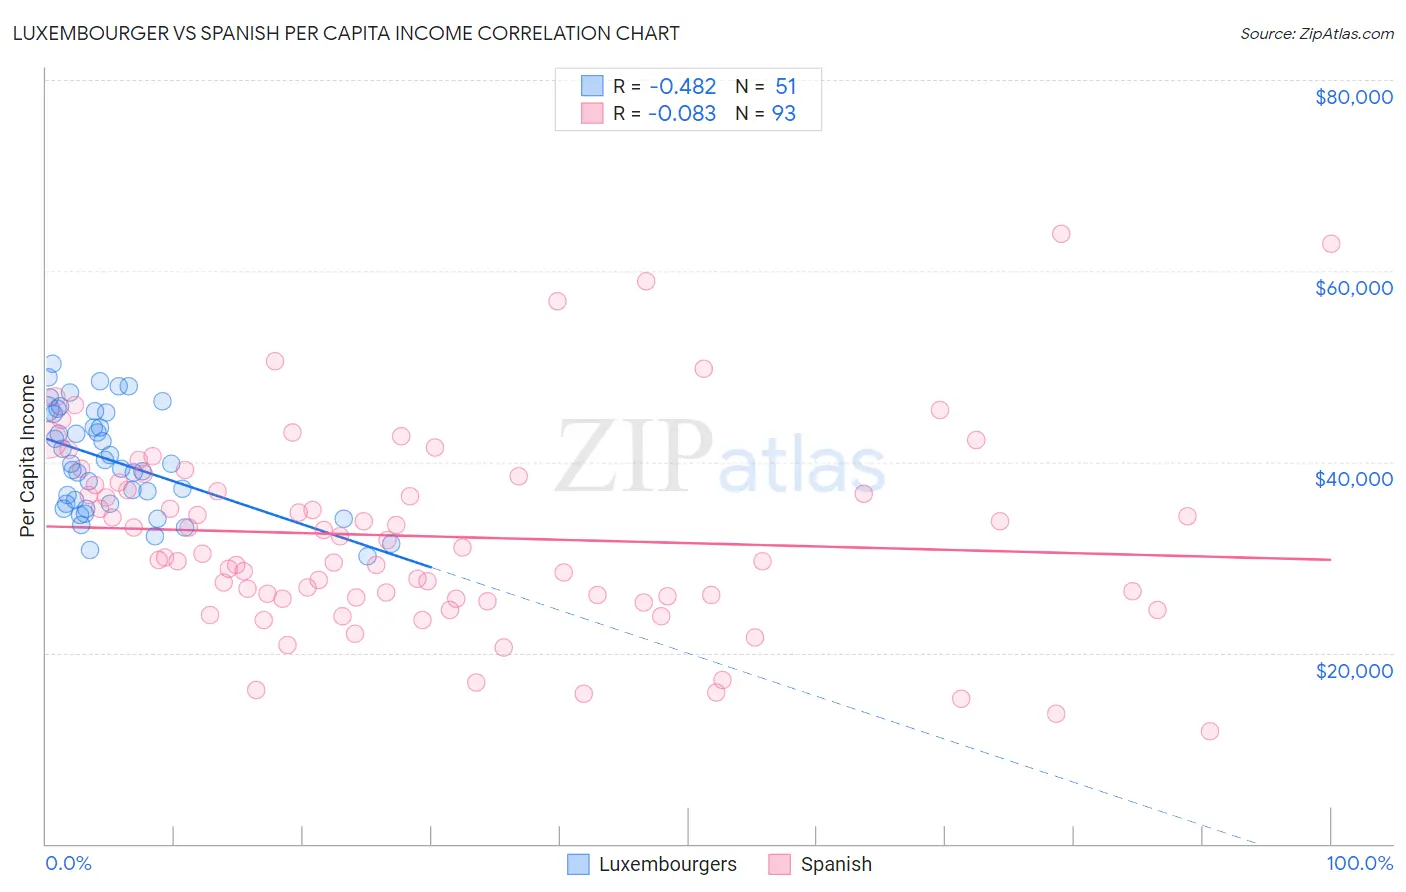 Luxembourger vs Spanish Per Capita Income